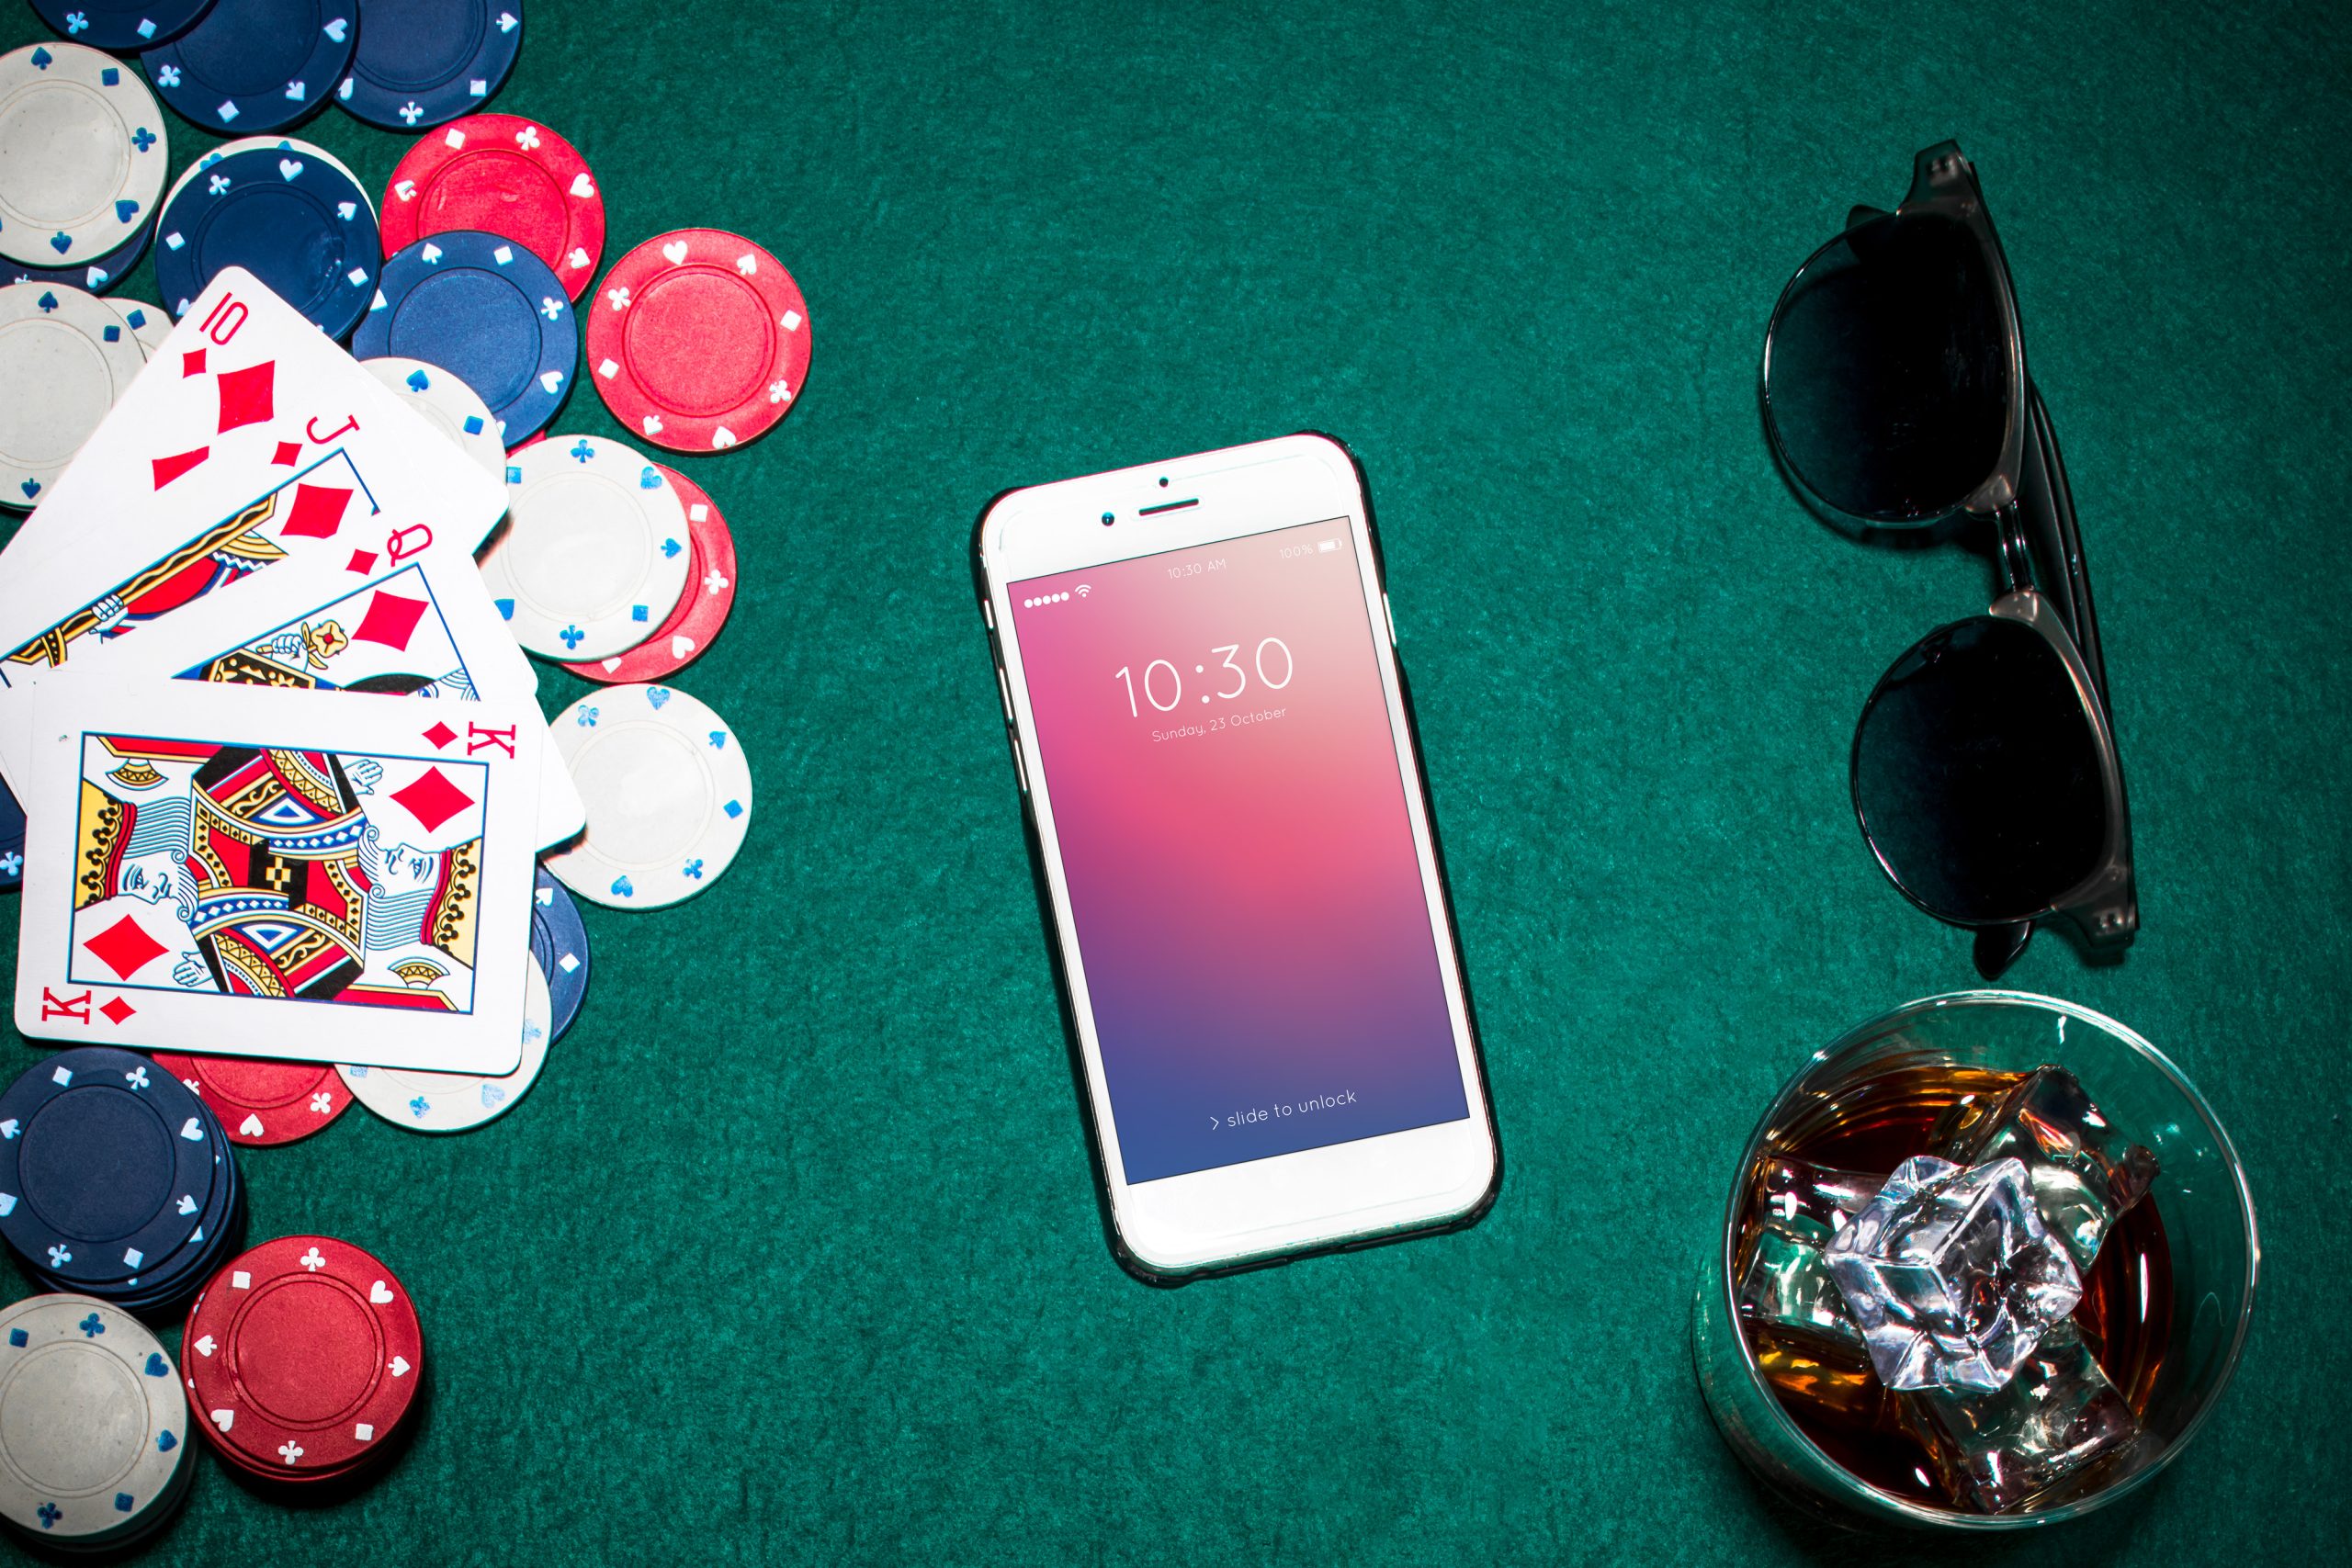 888 Casino App Review